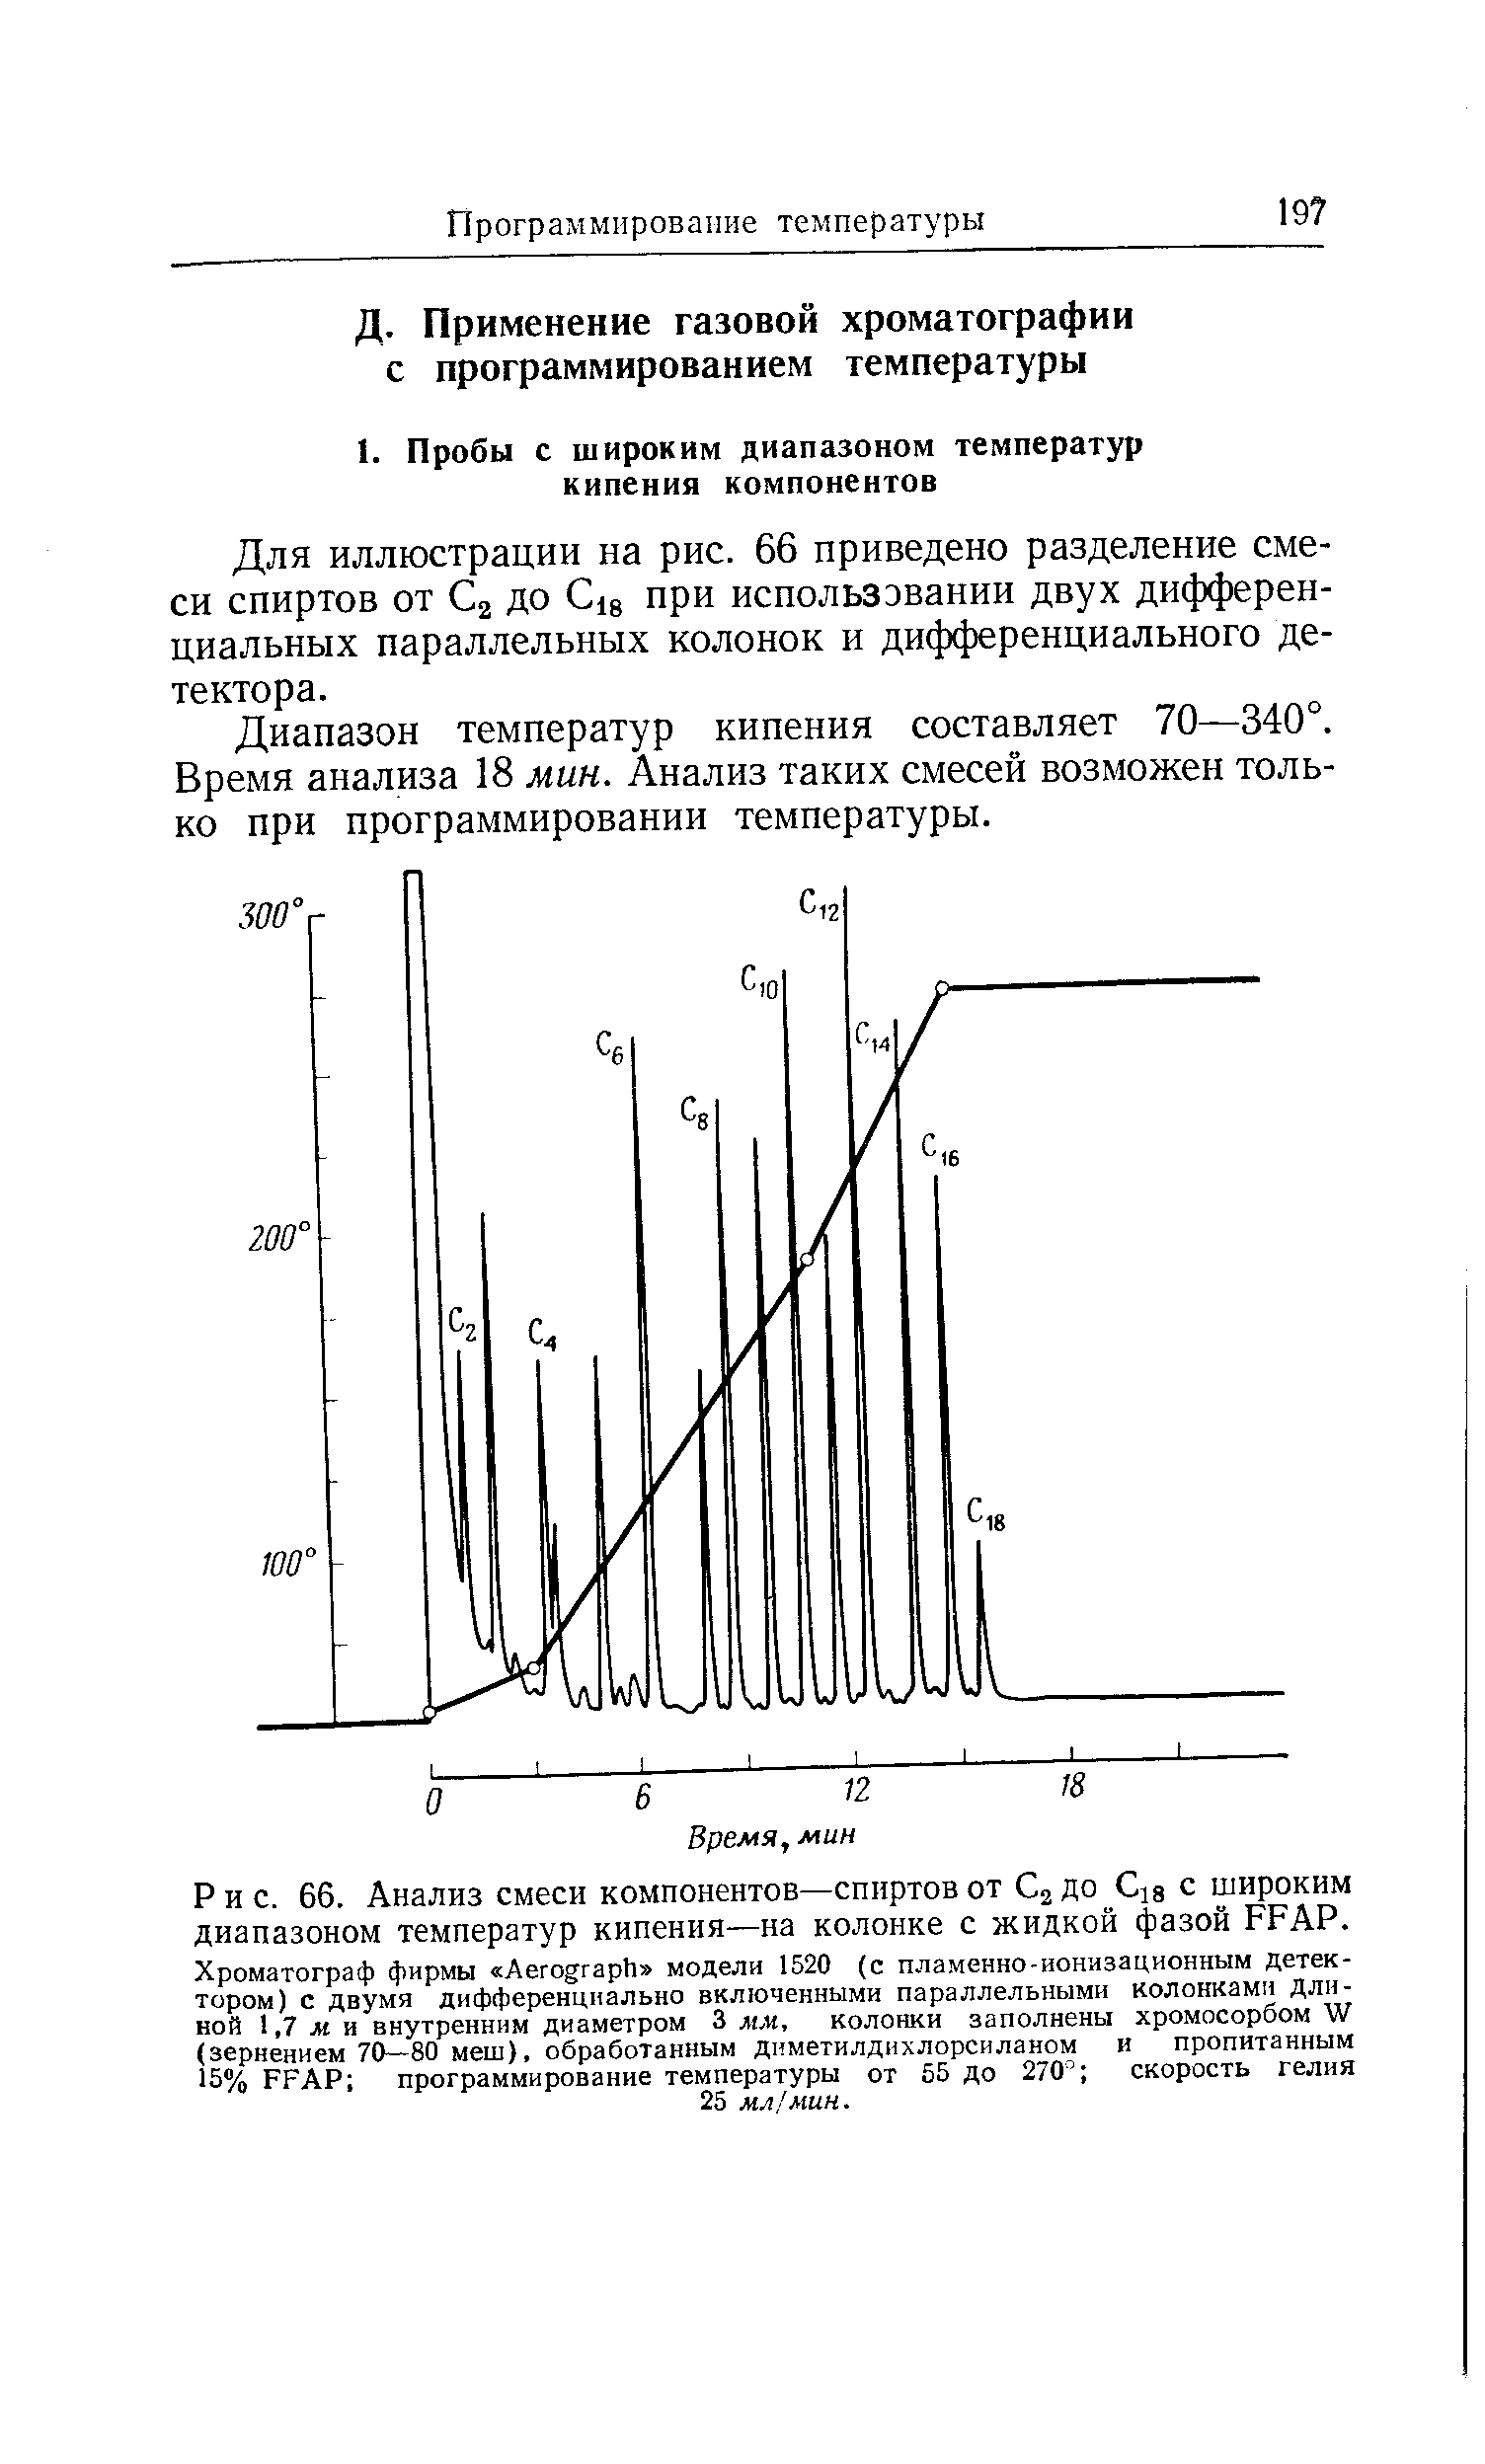 Для иллюстрации на рис. 66 приведено разделение смеси спиртов от Са до С18 при использэвании двух дифференциальных параллельных колонок и дифференциального детектора.